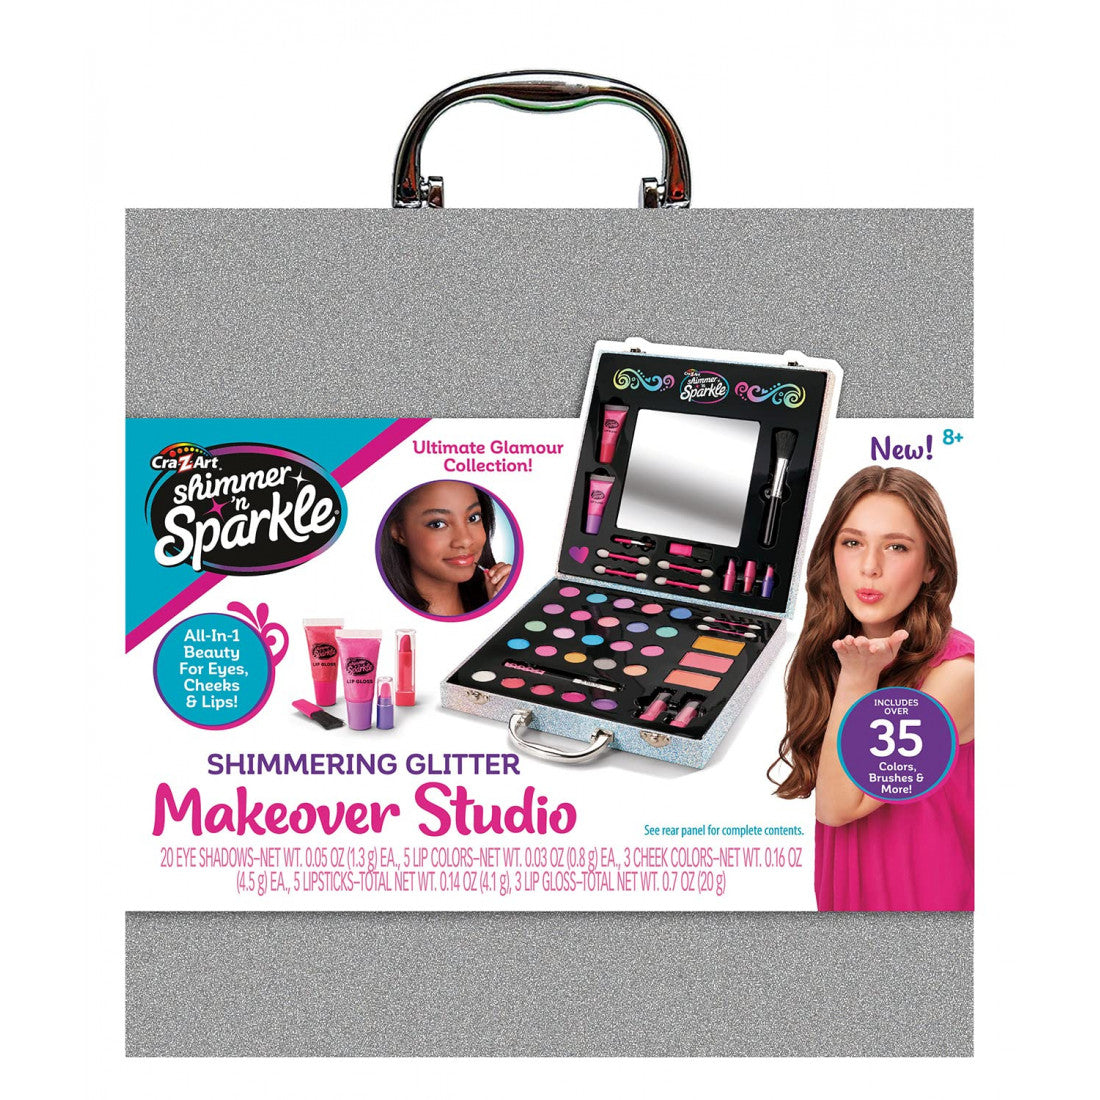 Shimmer ‘n Sparkle makeover Studio